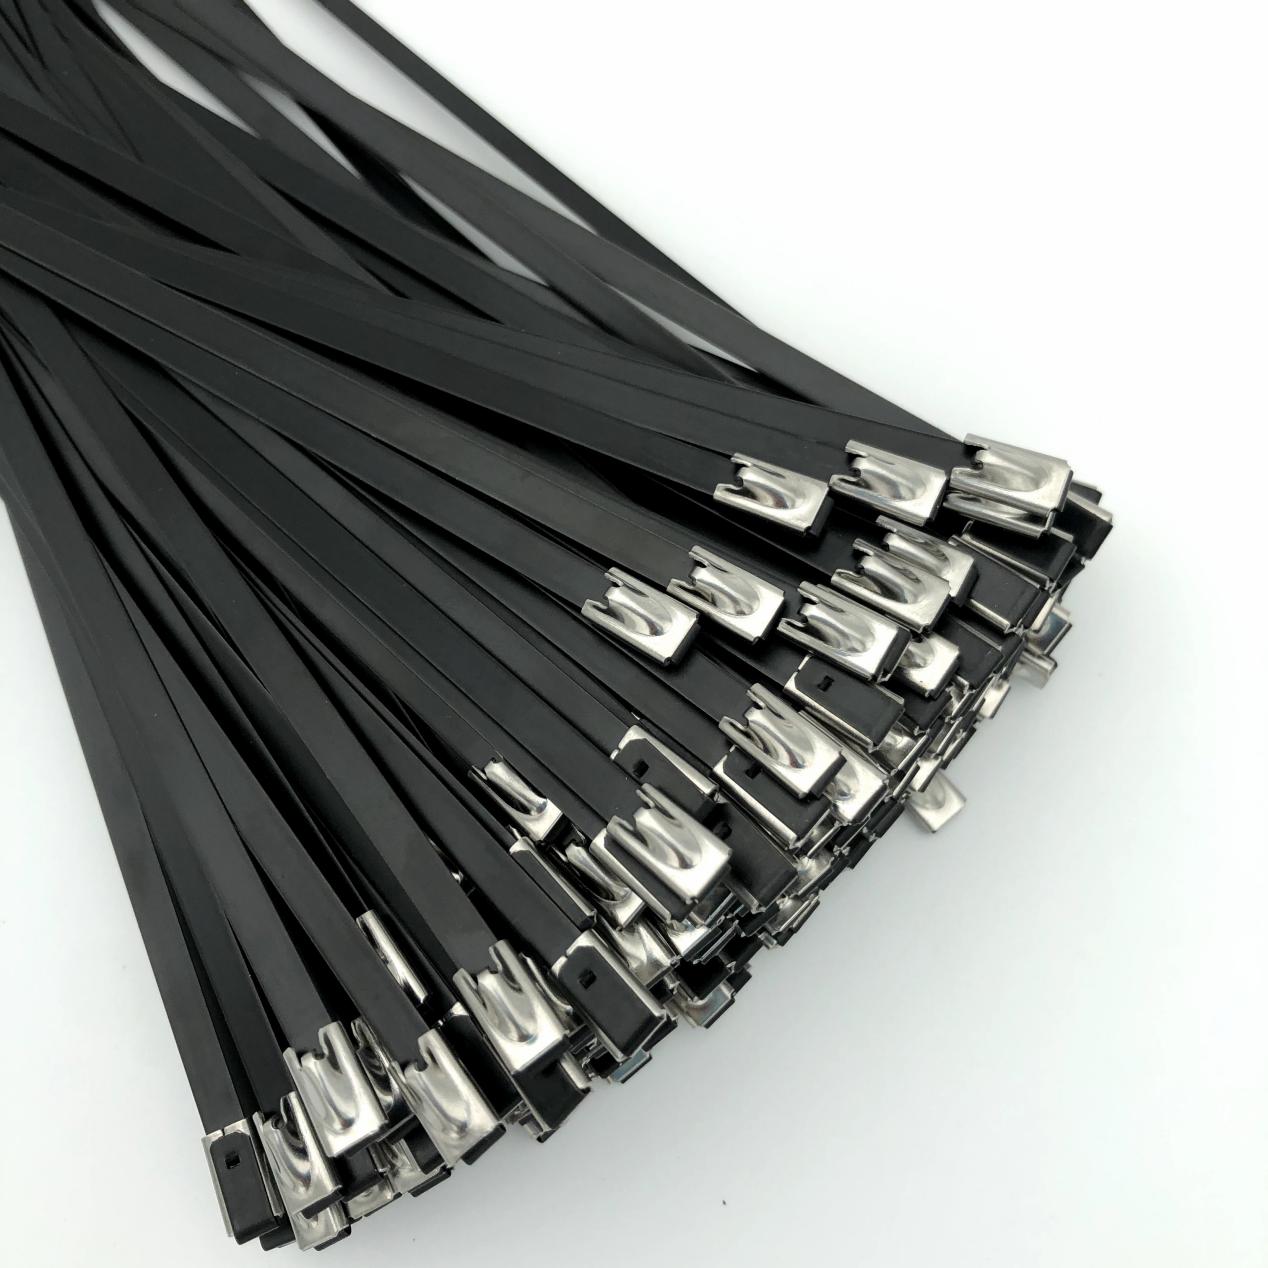 Visokokvalitetne crne vezice od nehrđajućeg čelika za različite primjene